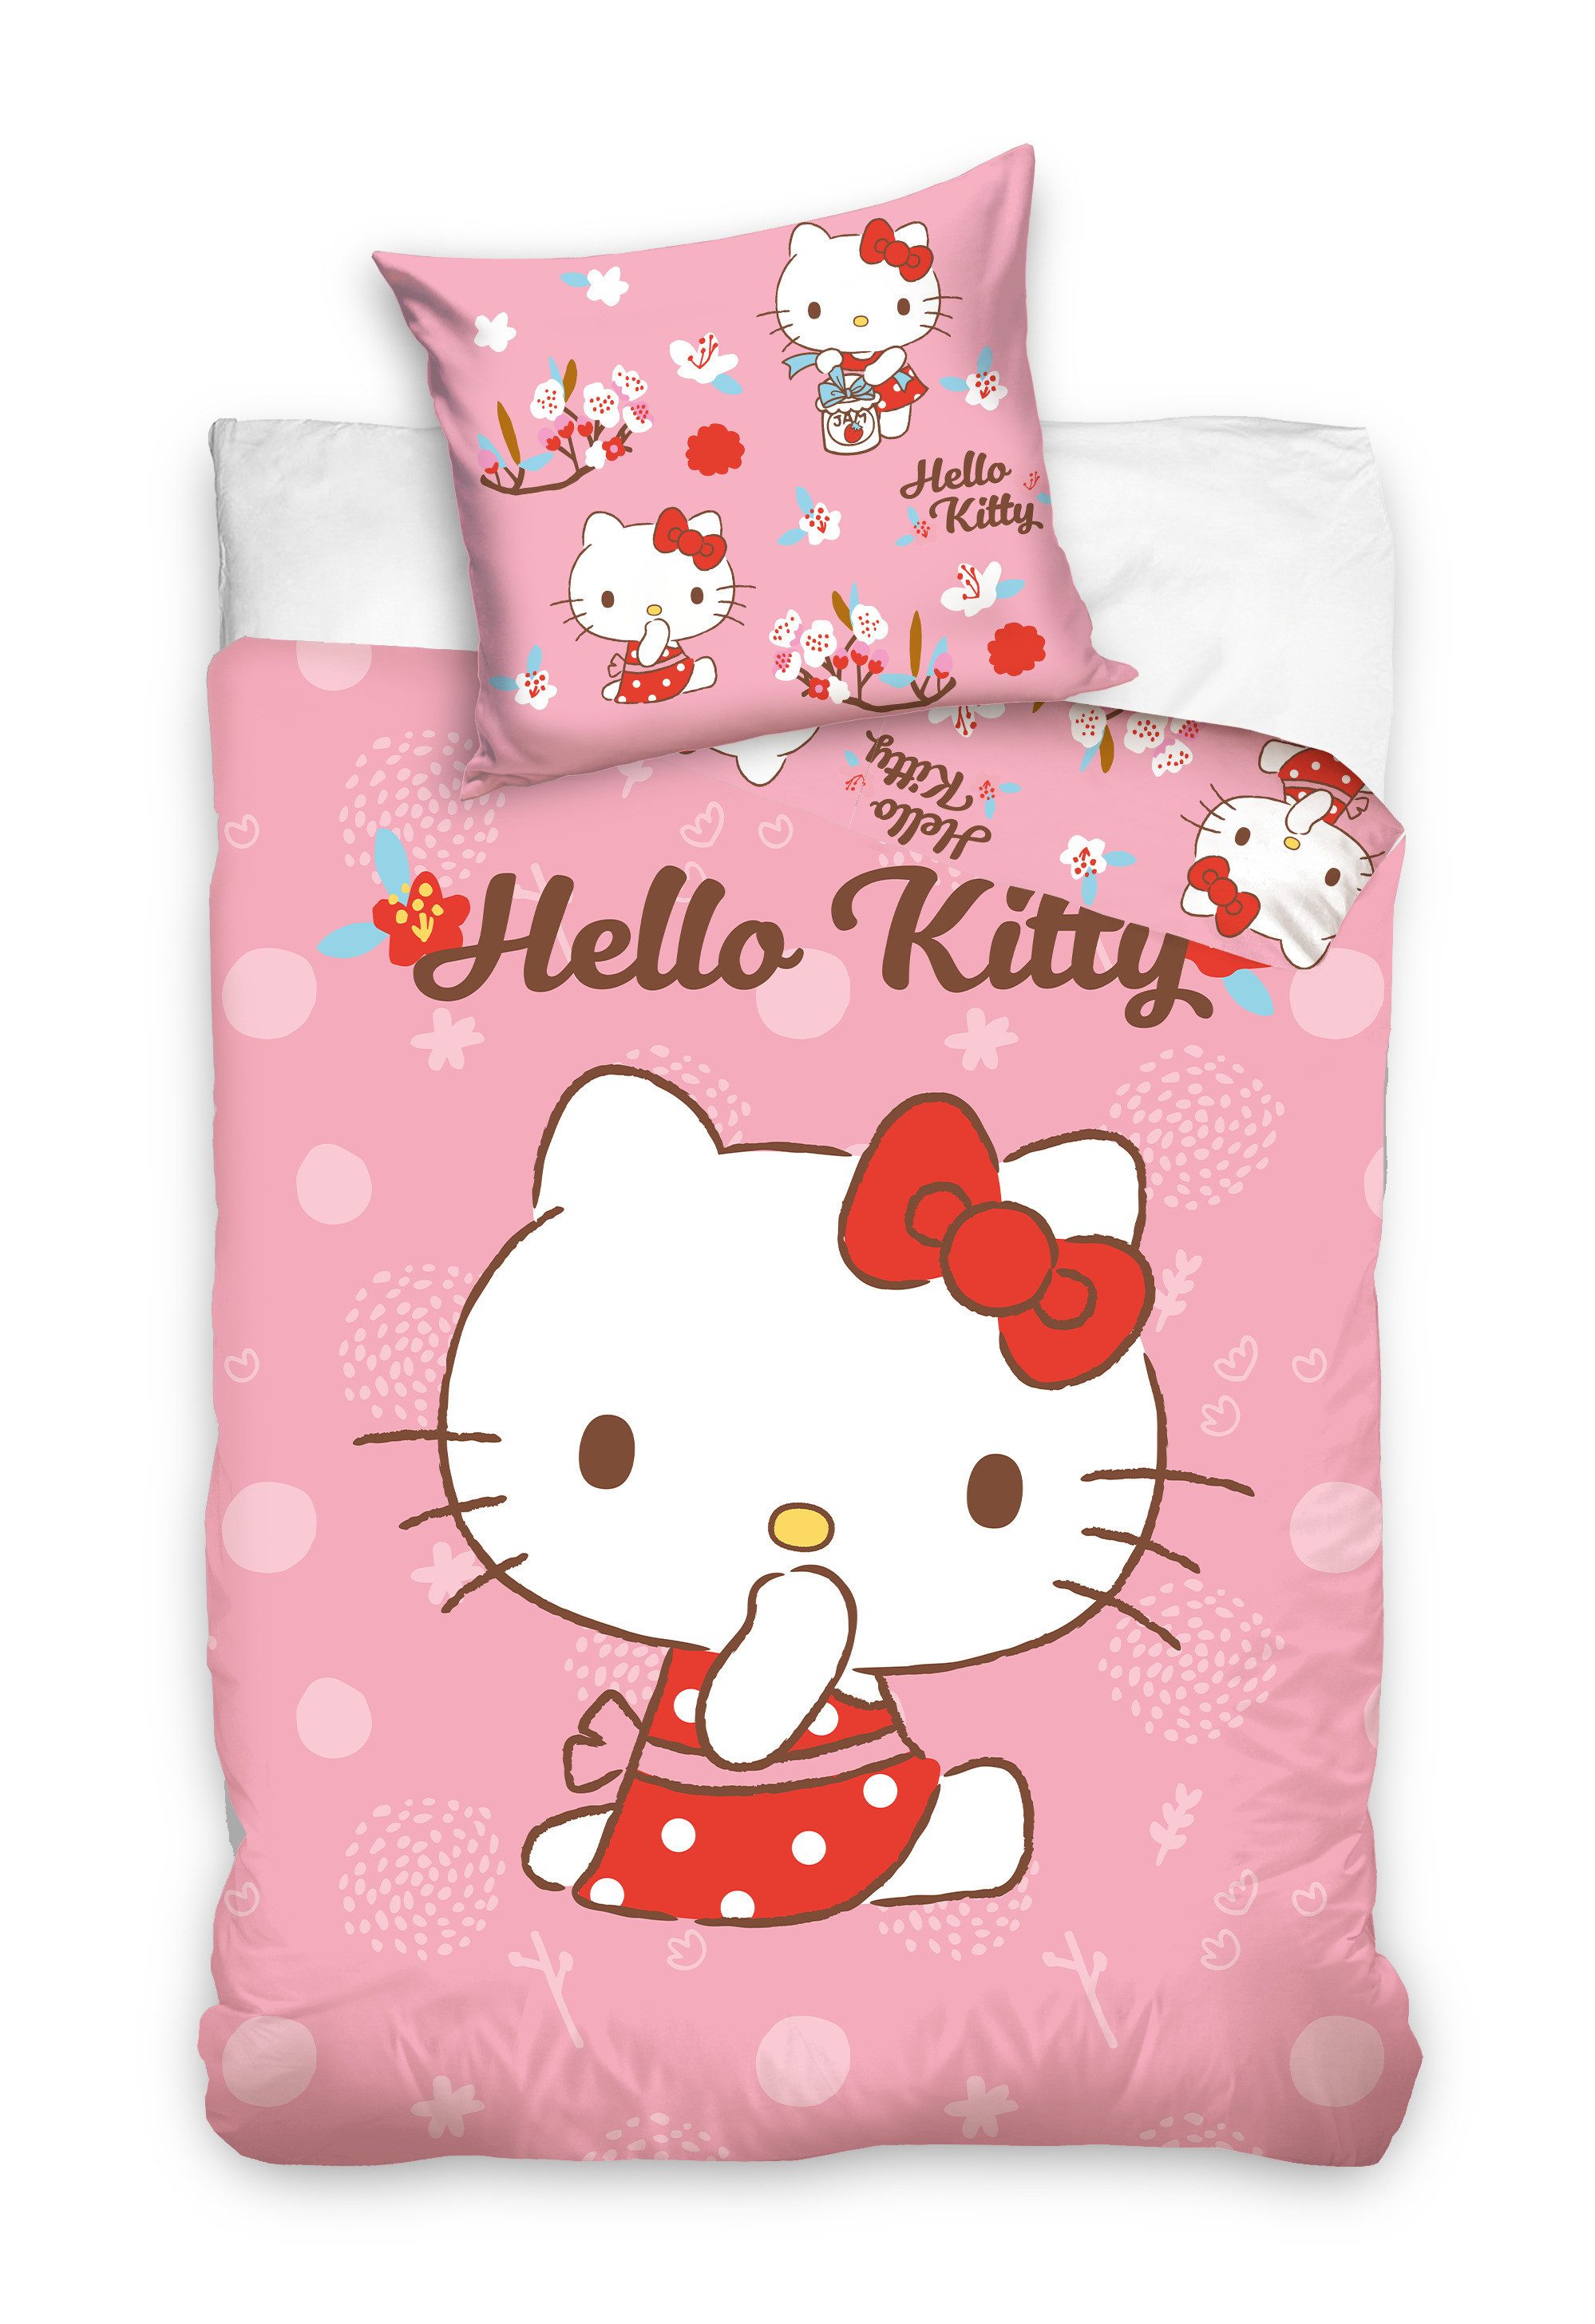 Babybettwäsche Hello Kitty Babybettwäsche 100x135 cm, Hello Kitty